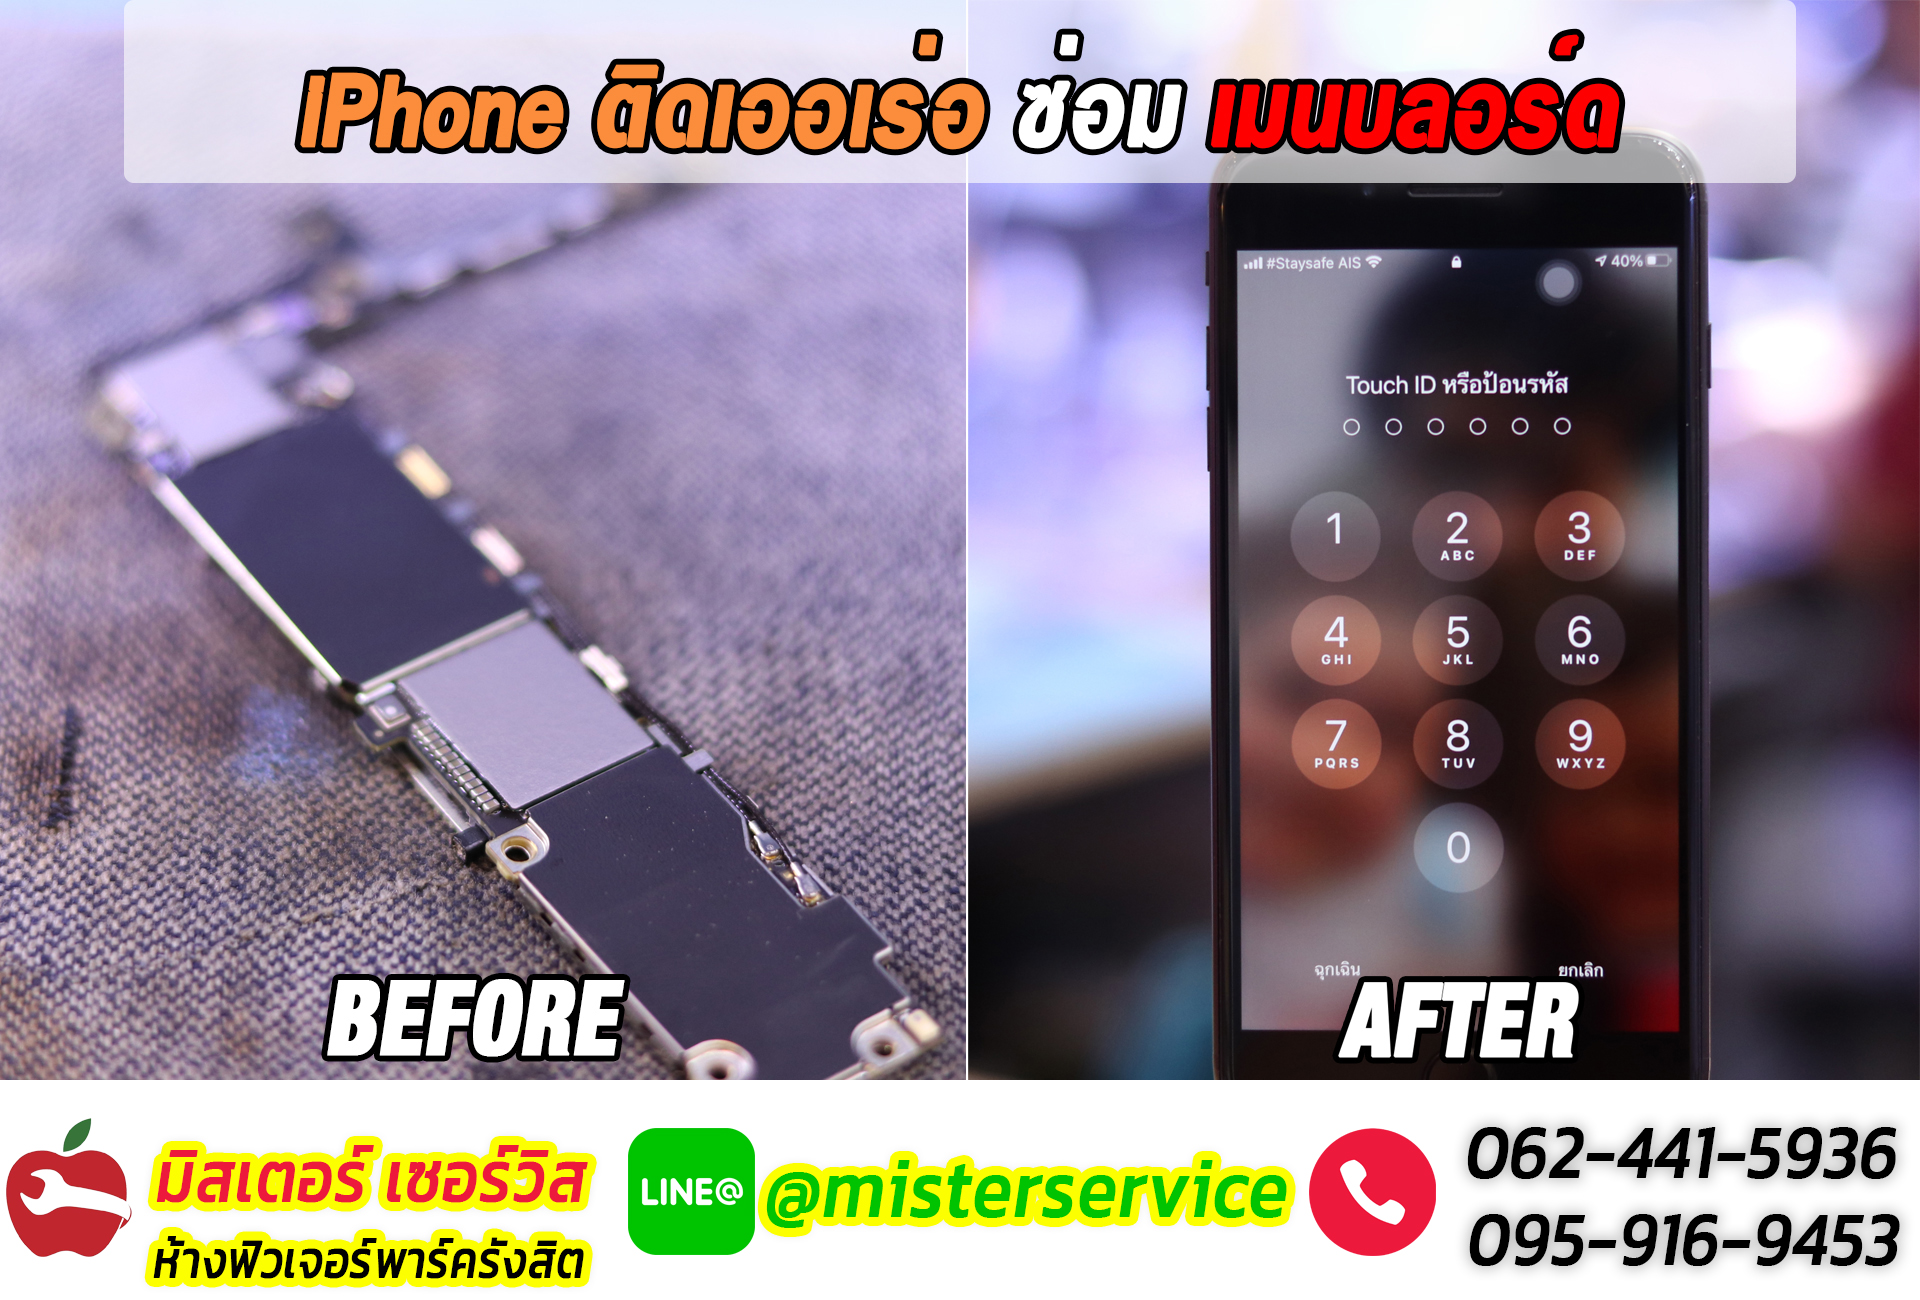 ซ่อม iphone พิษณุโลก